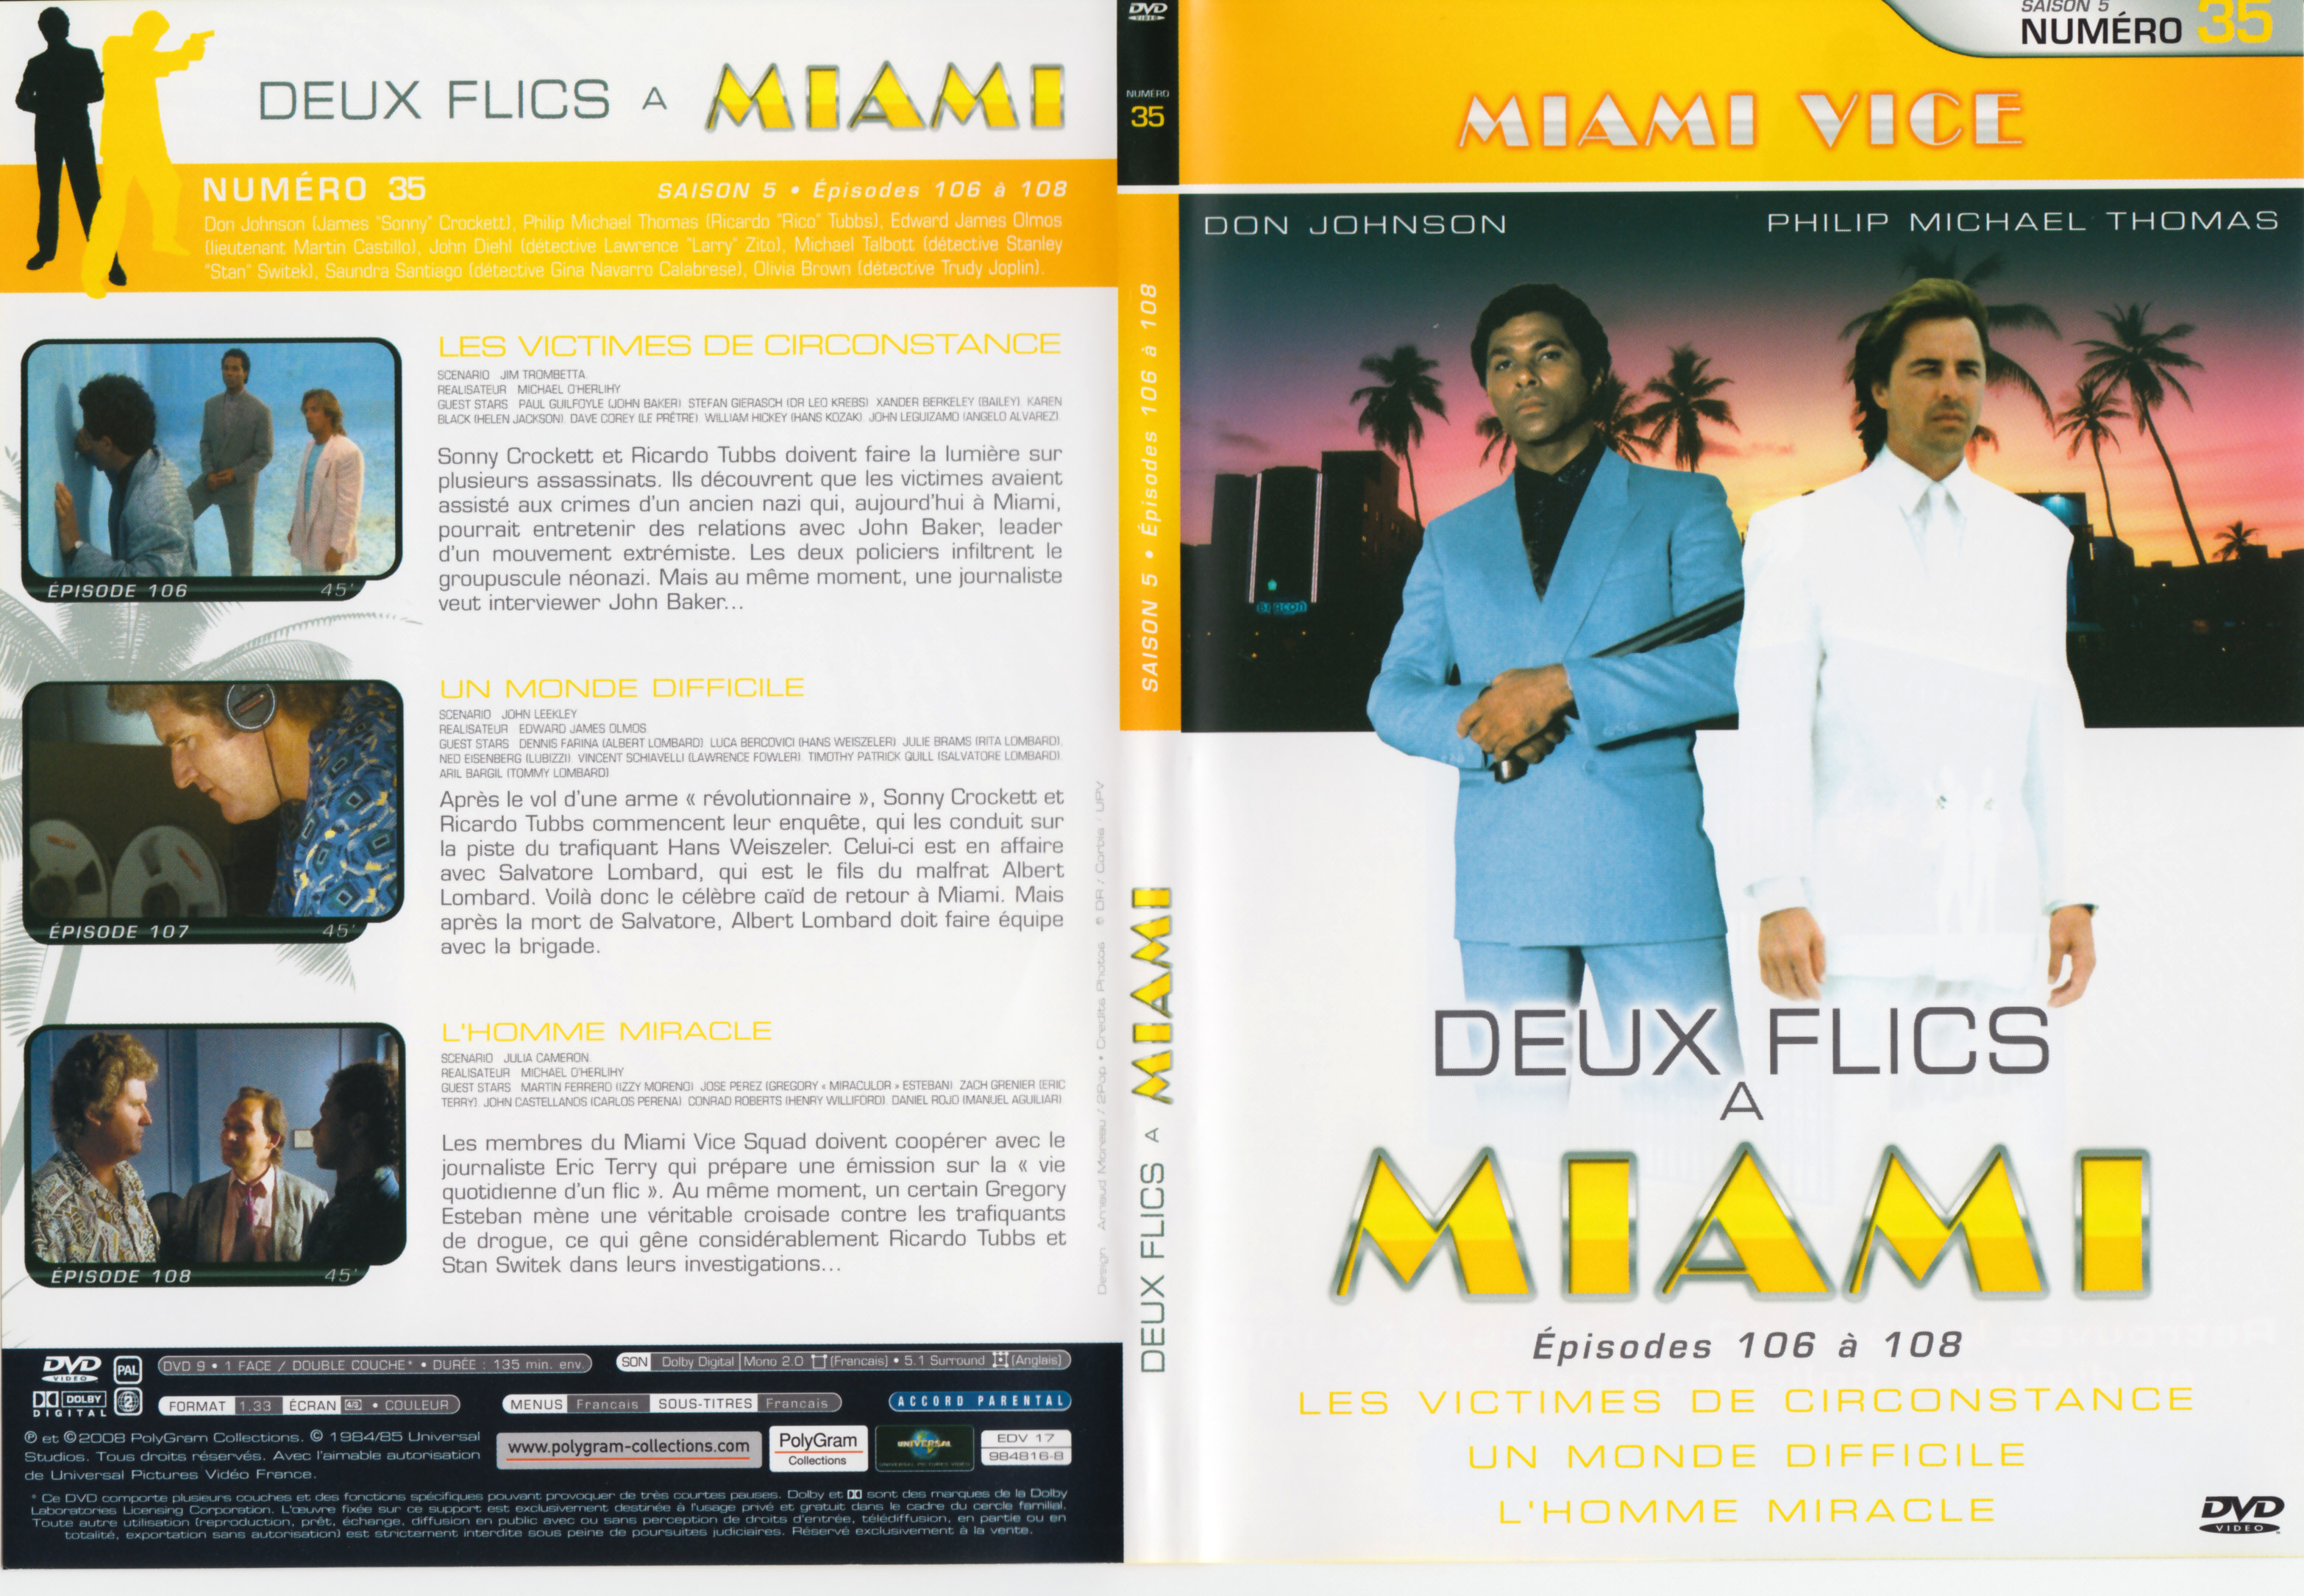 Jaquette DVD Deux flics  Miami Saison 5 vol 35